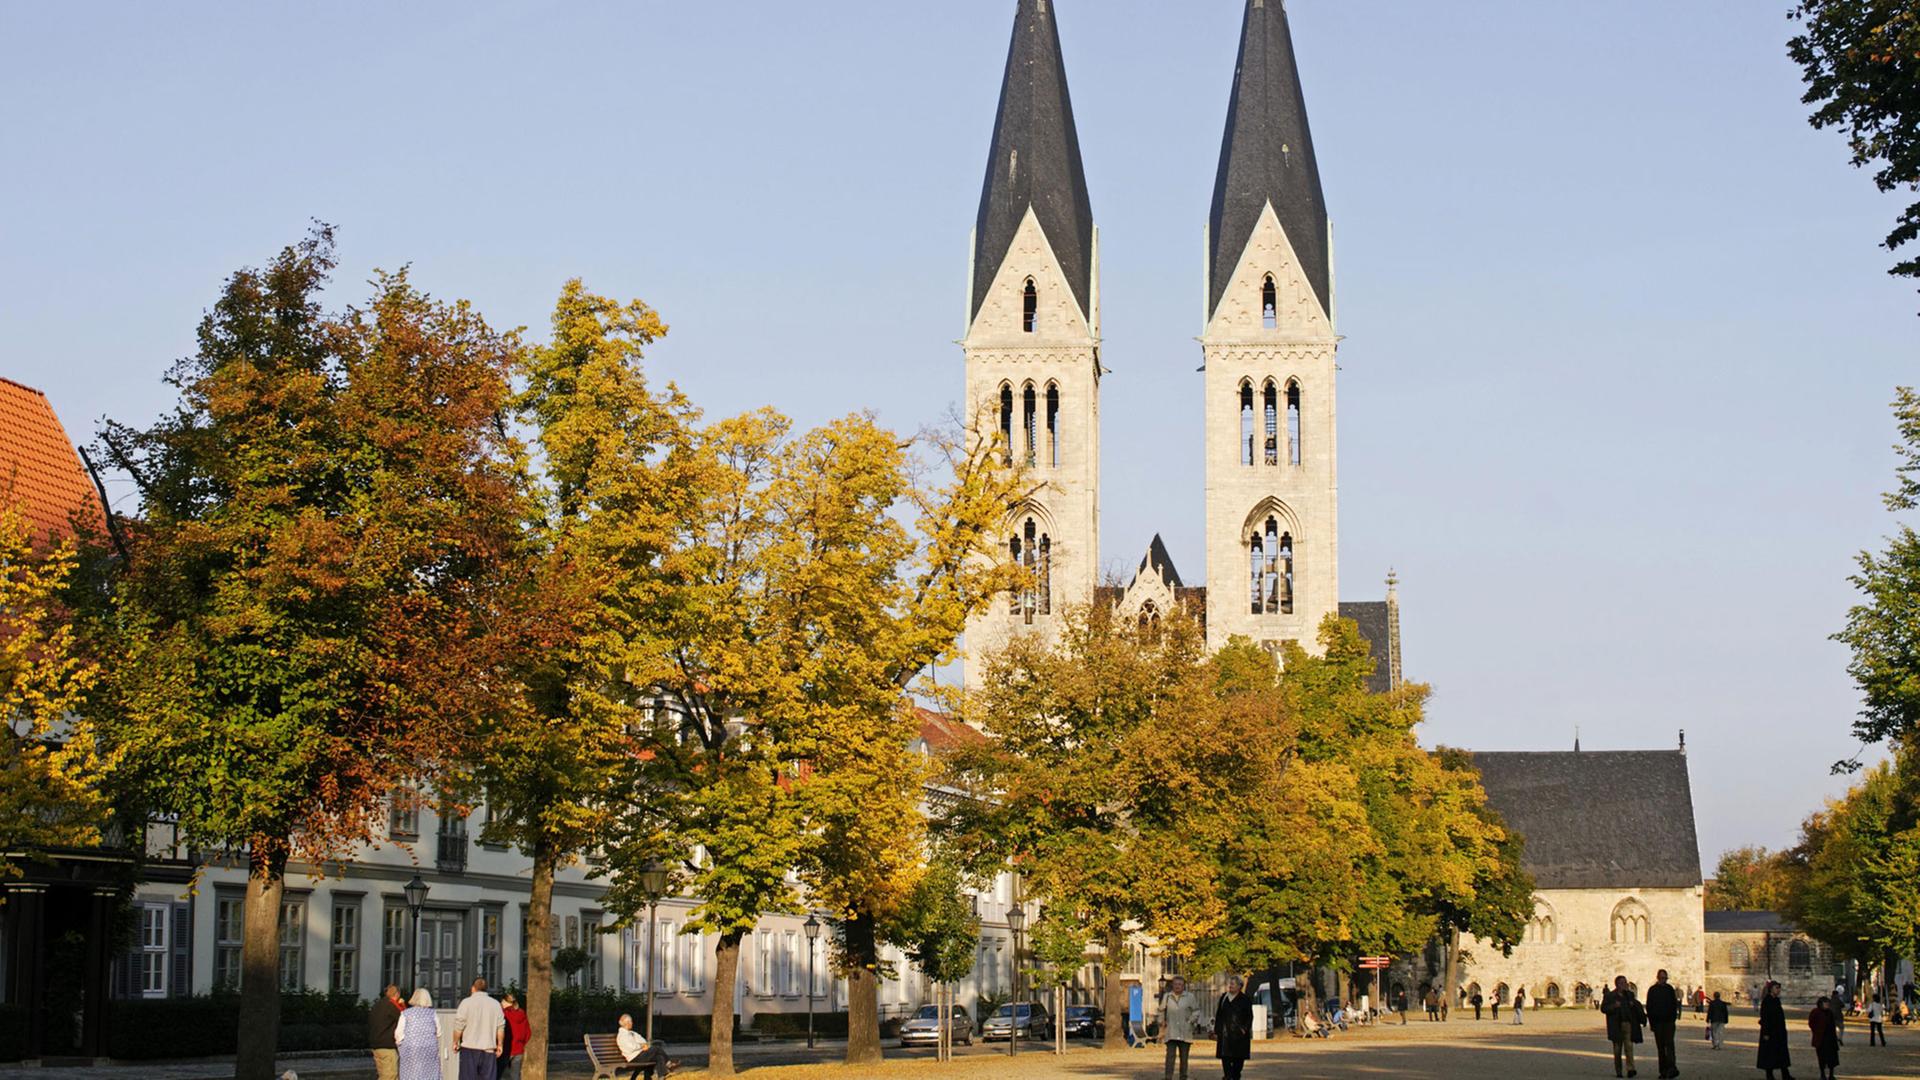 Dom und Domplatz von Halberstadt, Sachsen-Anhalt, Deutschland, Europa